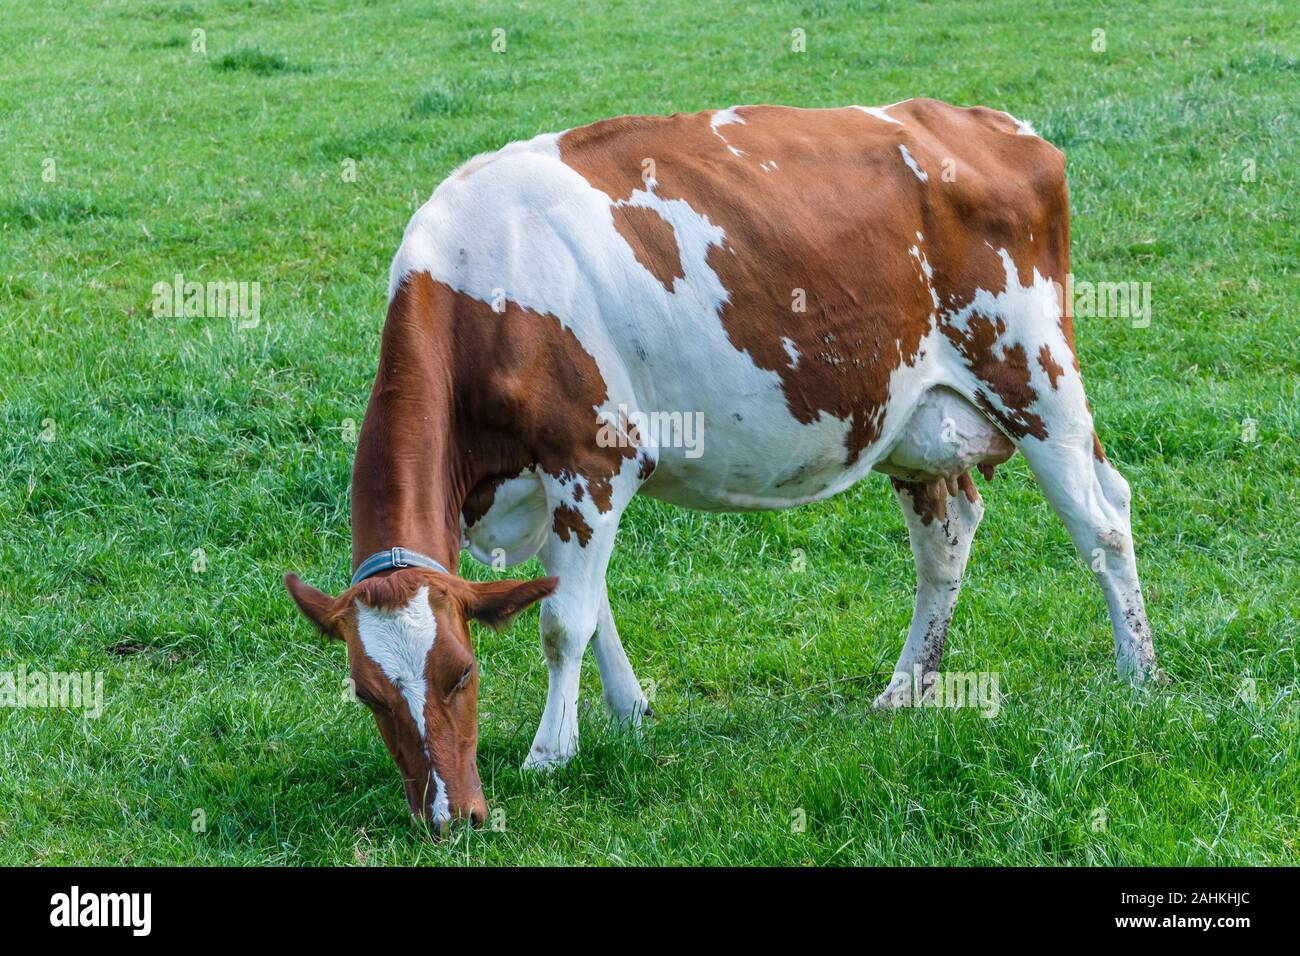 Mucca in un verde prato erboso in una giornata di sole, a pochi km da Rotterdam, Paesi Bassi Foto Stock